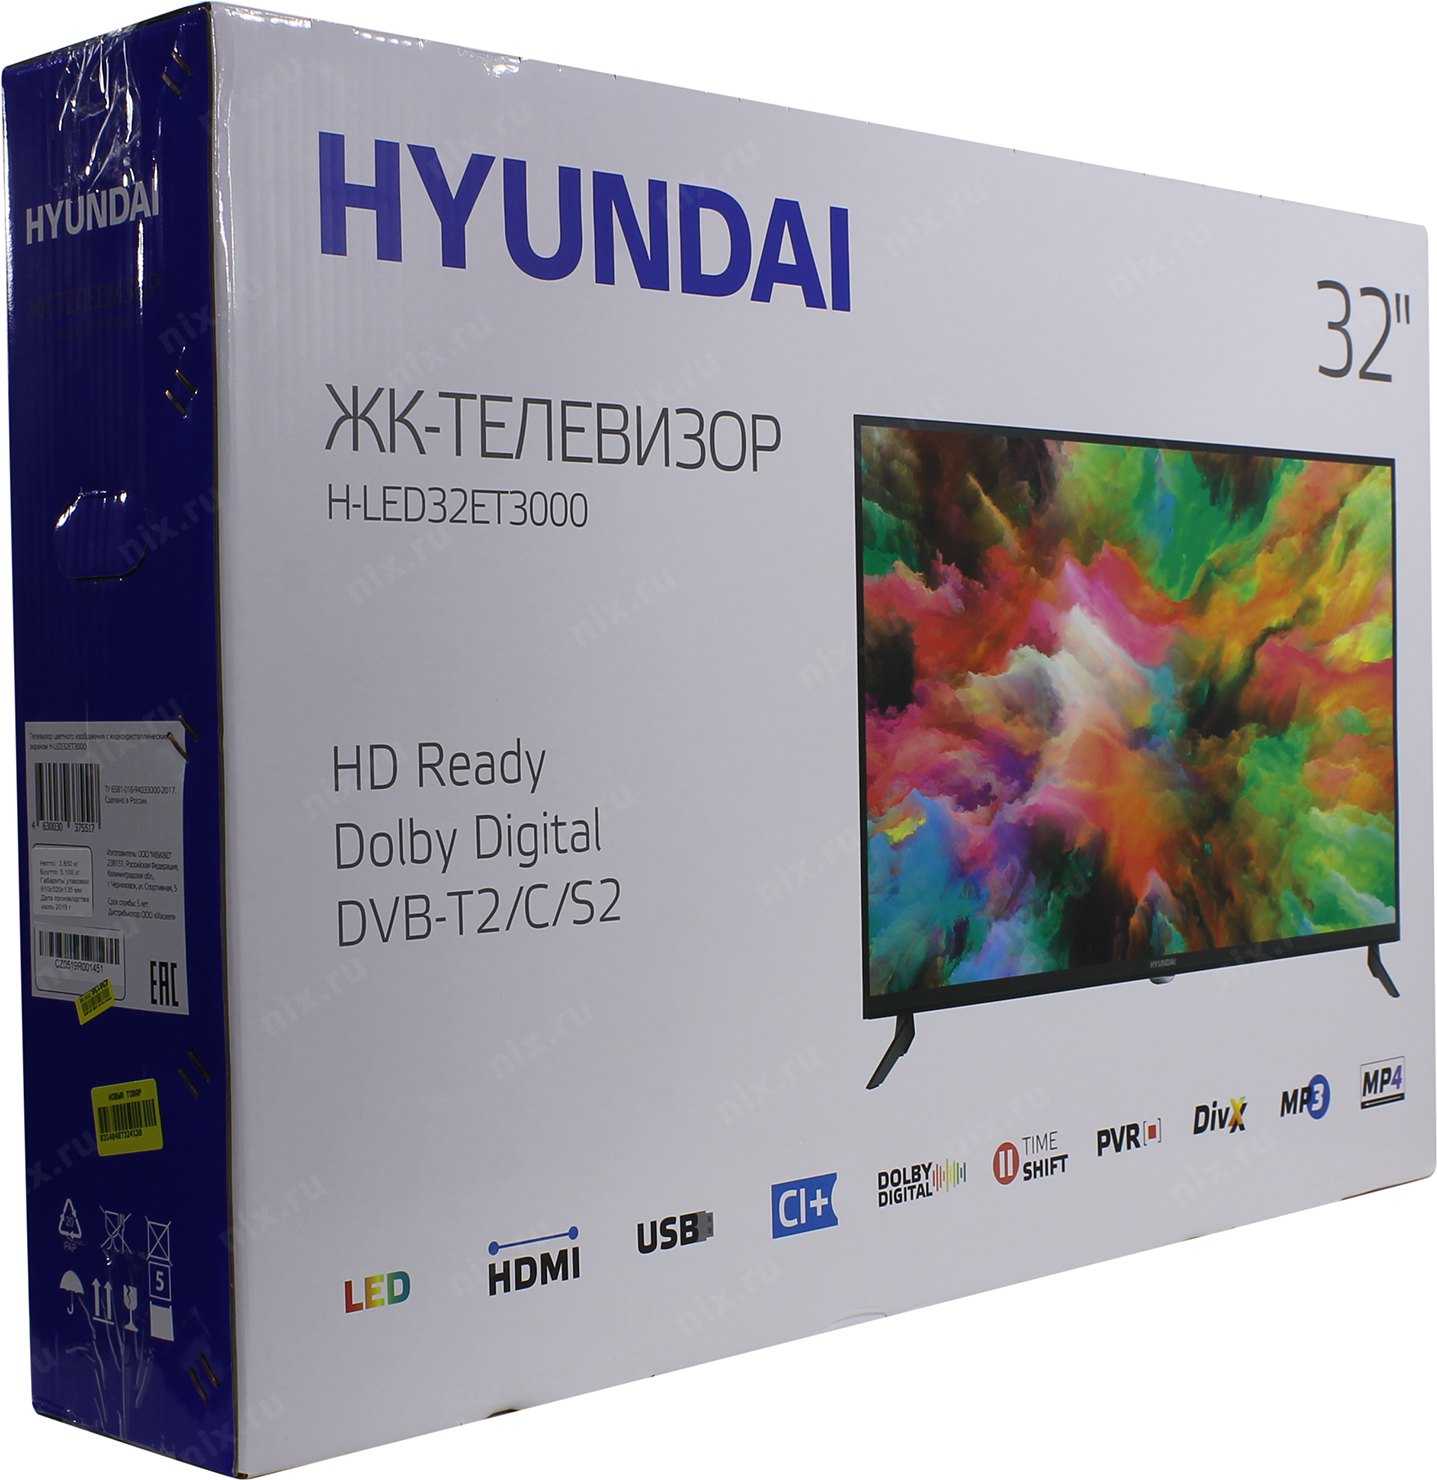 Hyundai H-LED55EU7008 - короткий но максимально информативный обзор Для большего удобства добавлены характеристики отзывы и видео